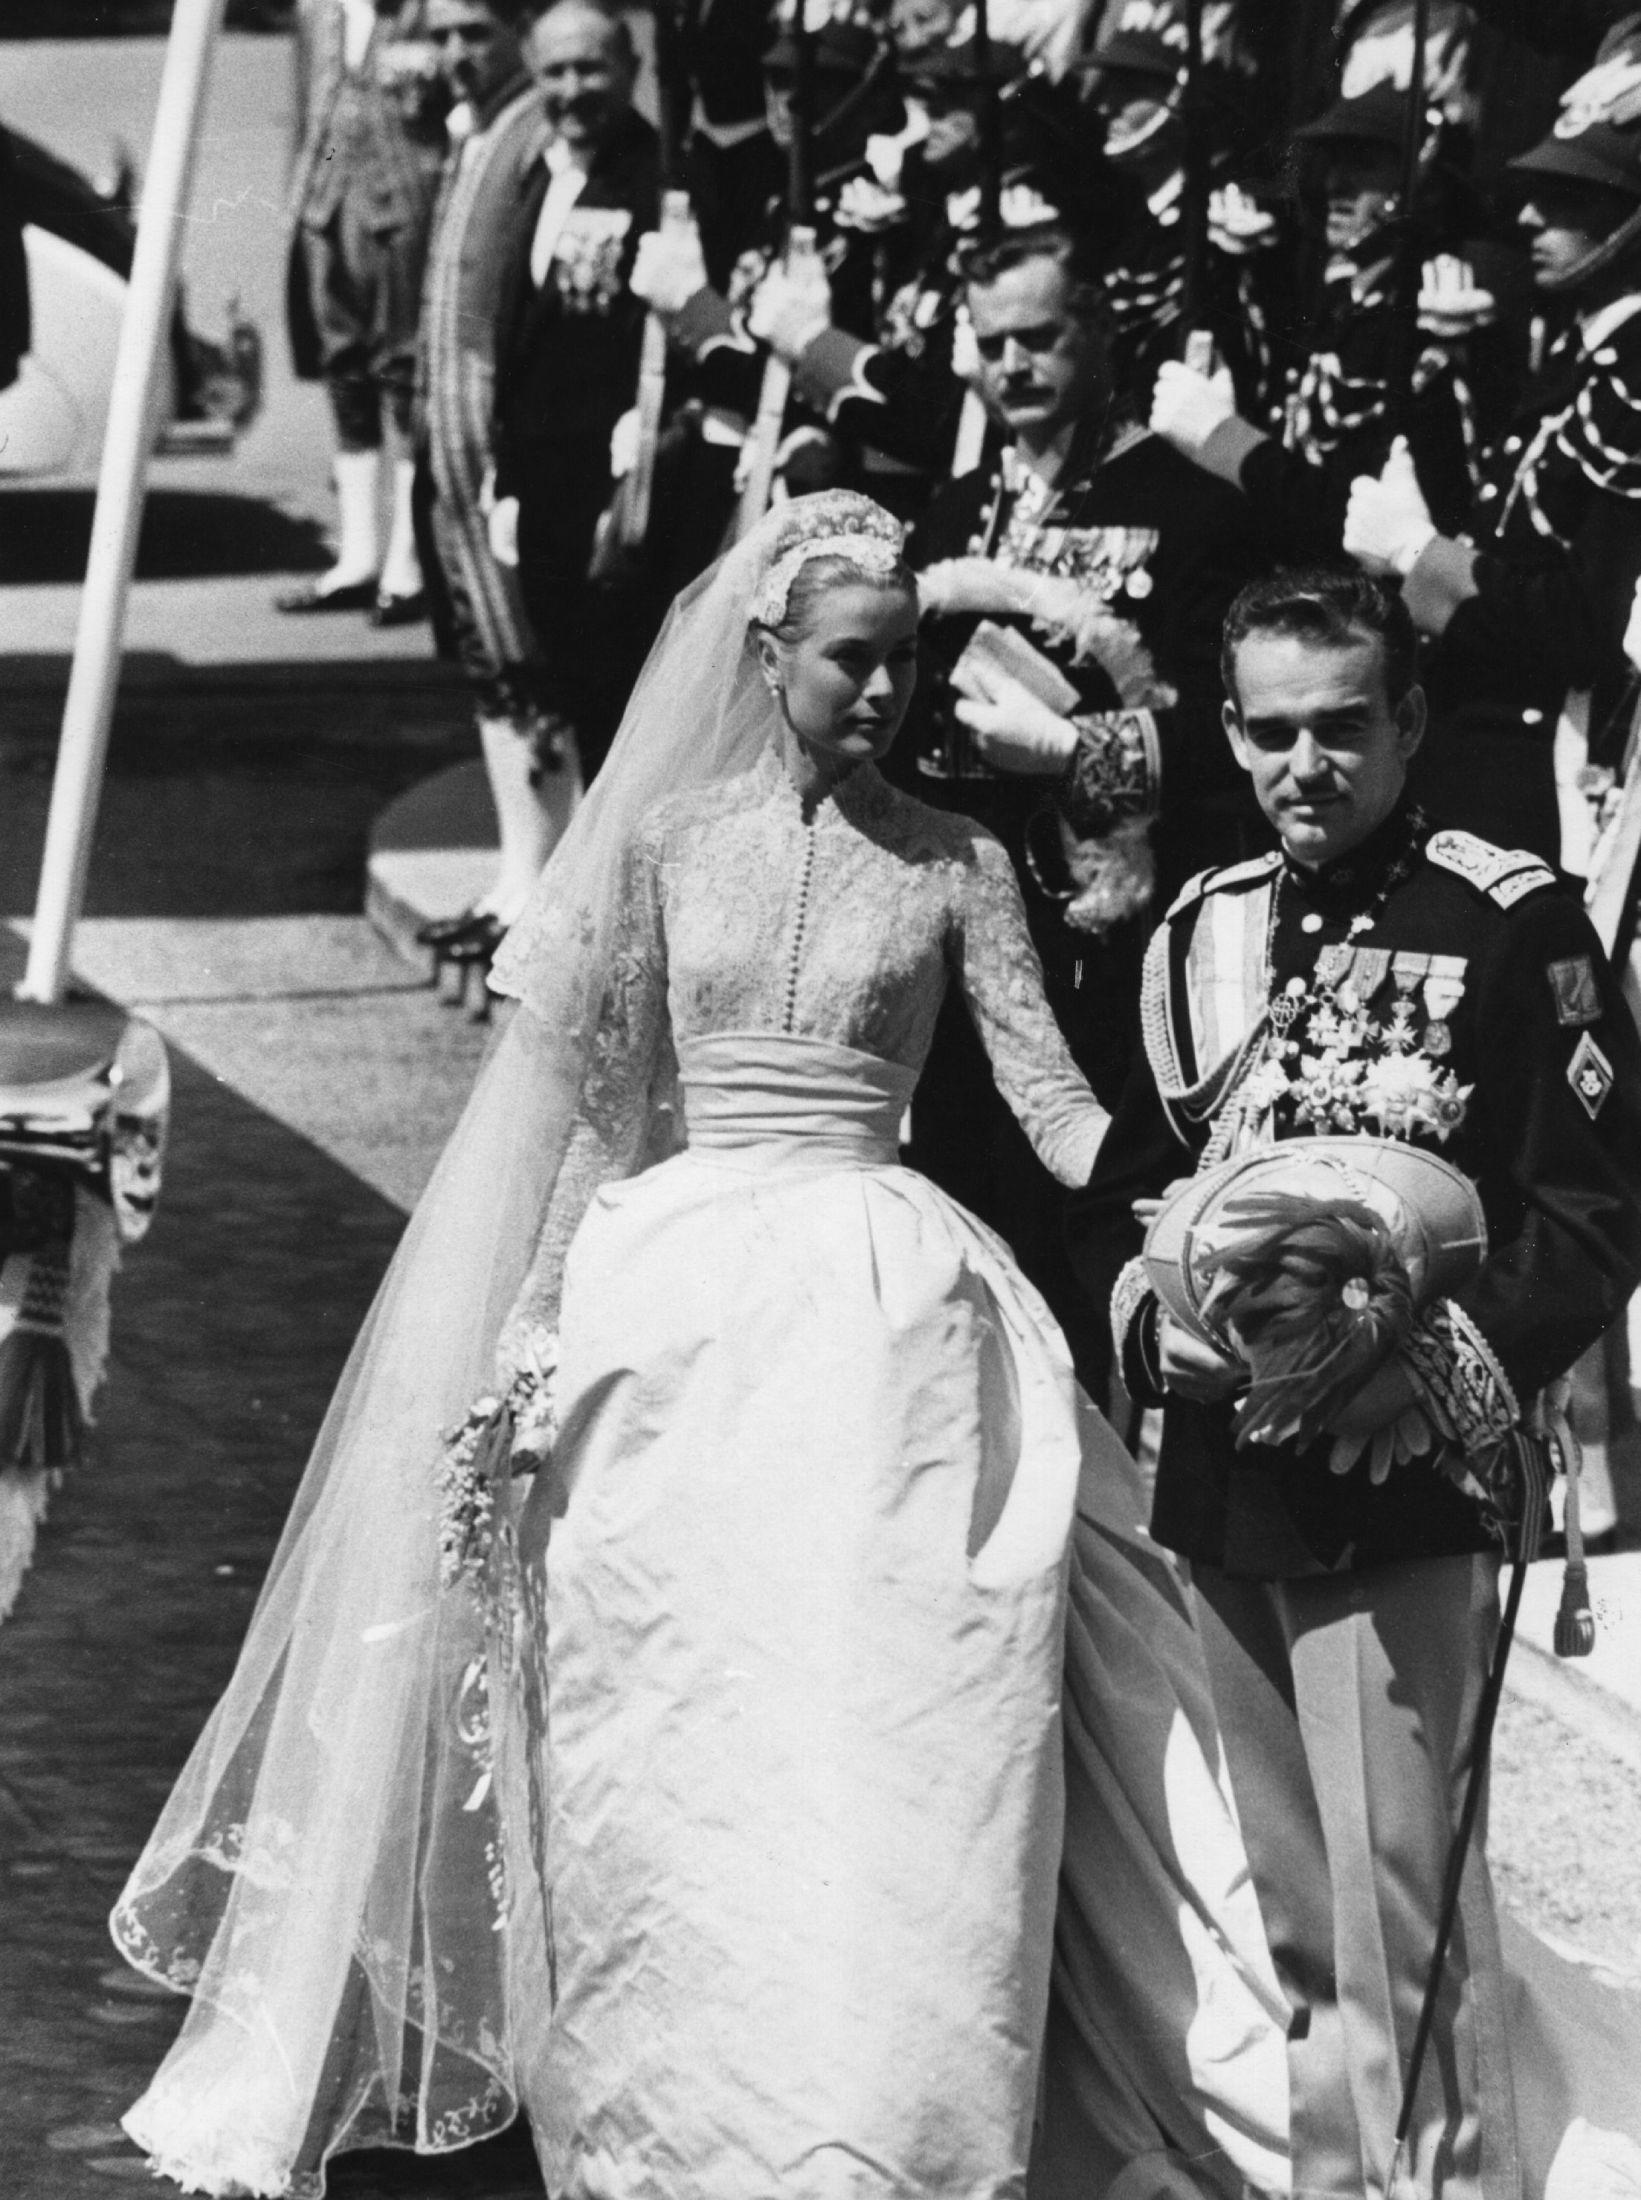 ORIGINALEN: Den amerikanske skuespilleren Grace Kelly (Prinsesse Grace) hadde en av tidenes mest ikoniske brudekjoler. Foto: Getty Images.